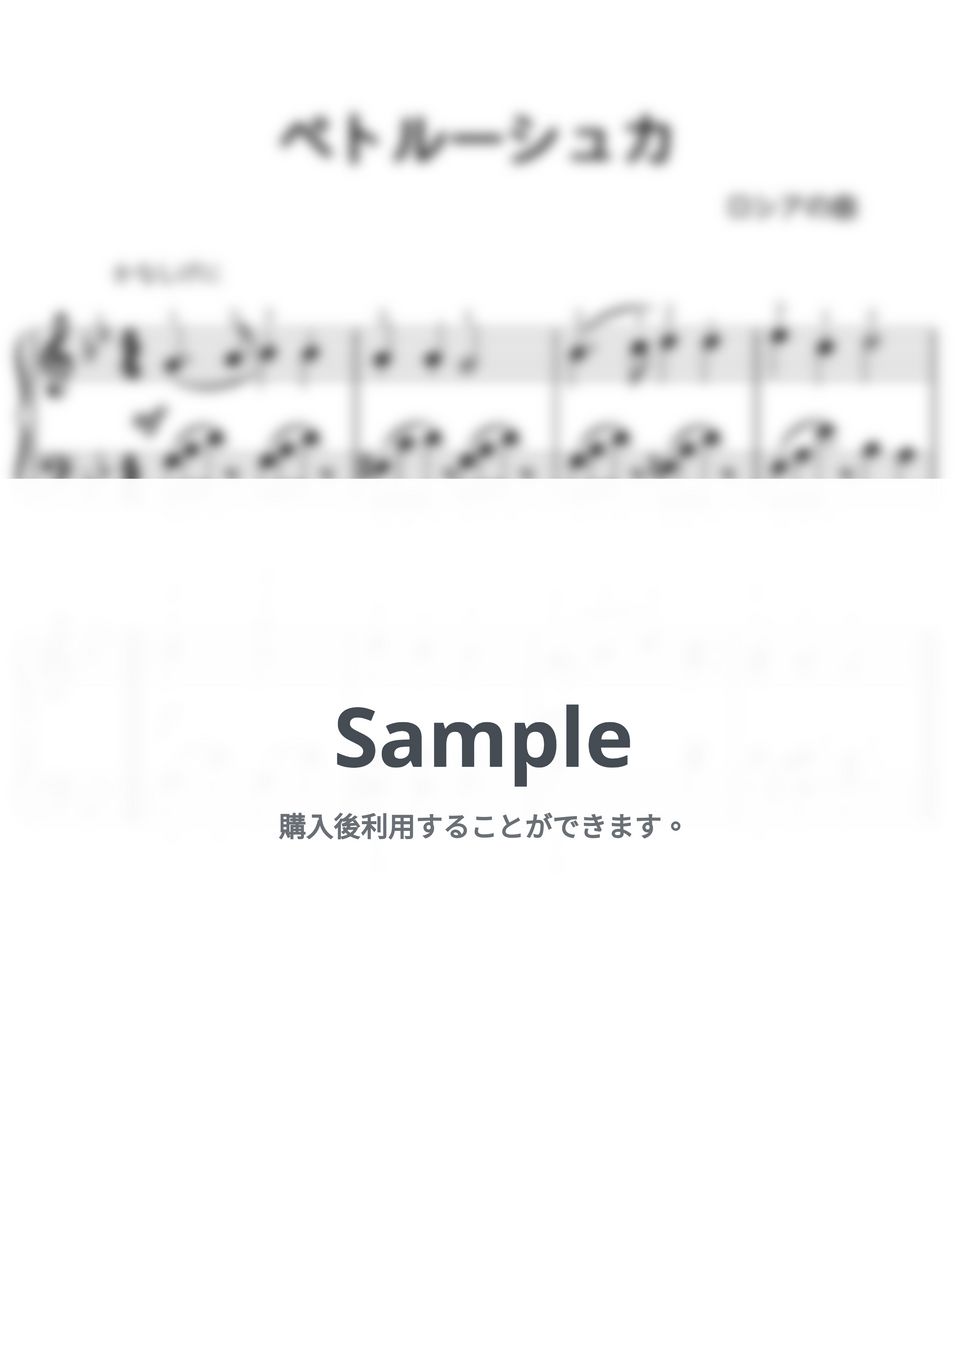 【初級】ペトルーシュカ/コンクール課題曲 (コンクール課題曲) by ピアノの先生の楽譜集